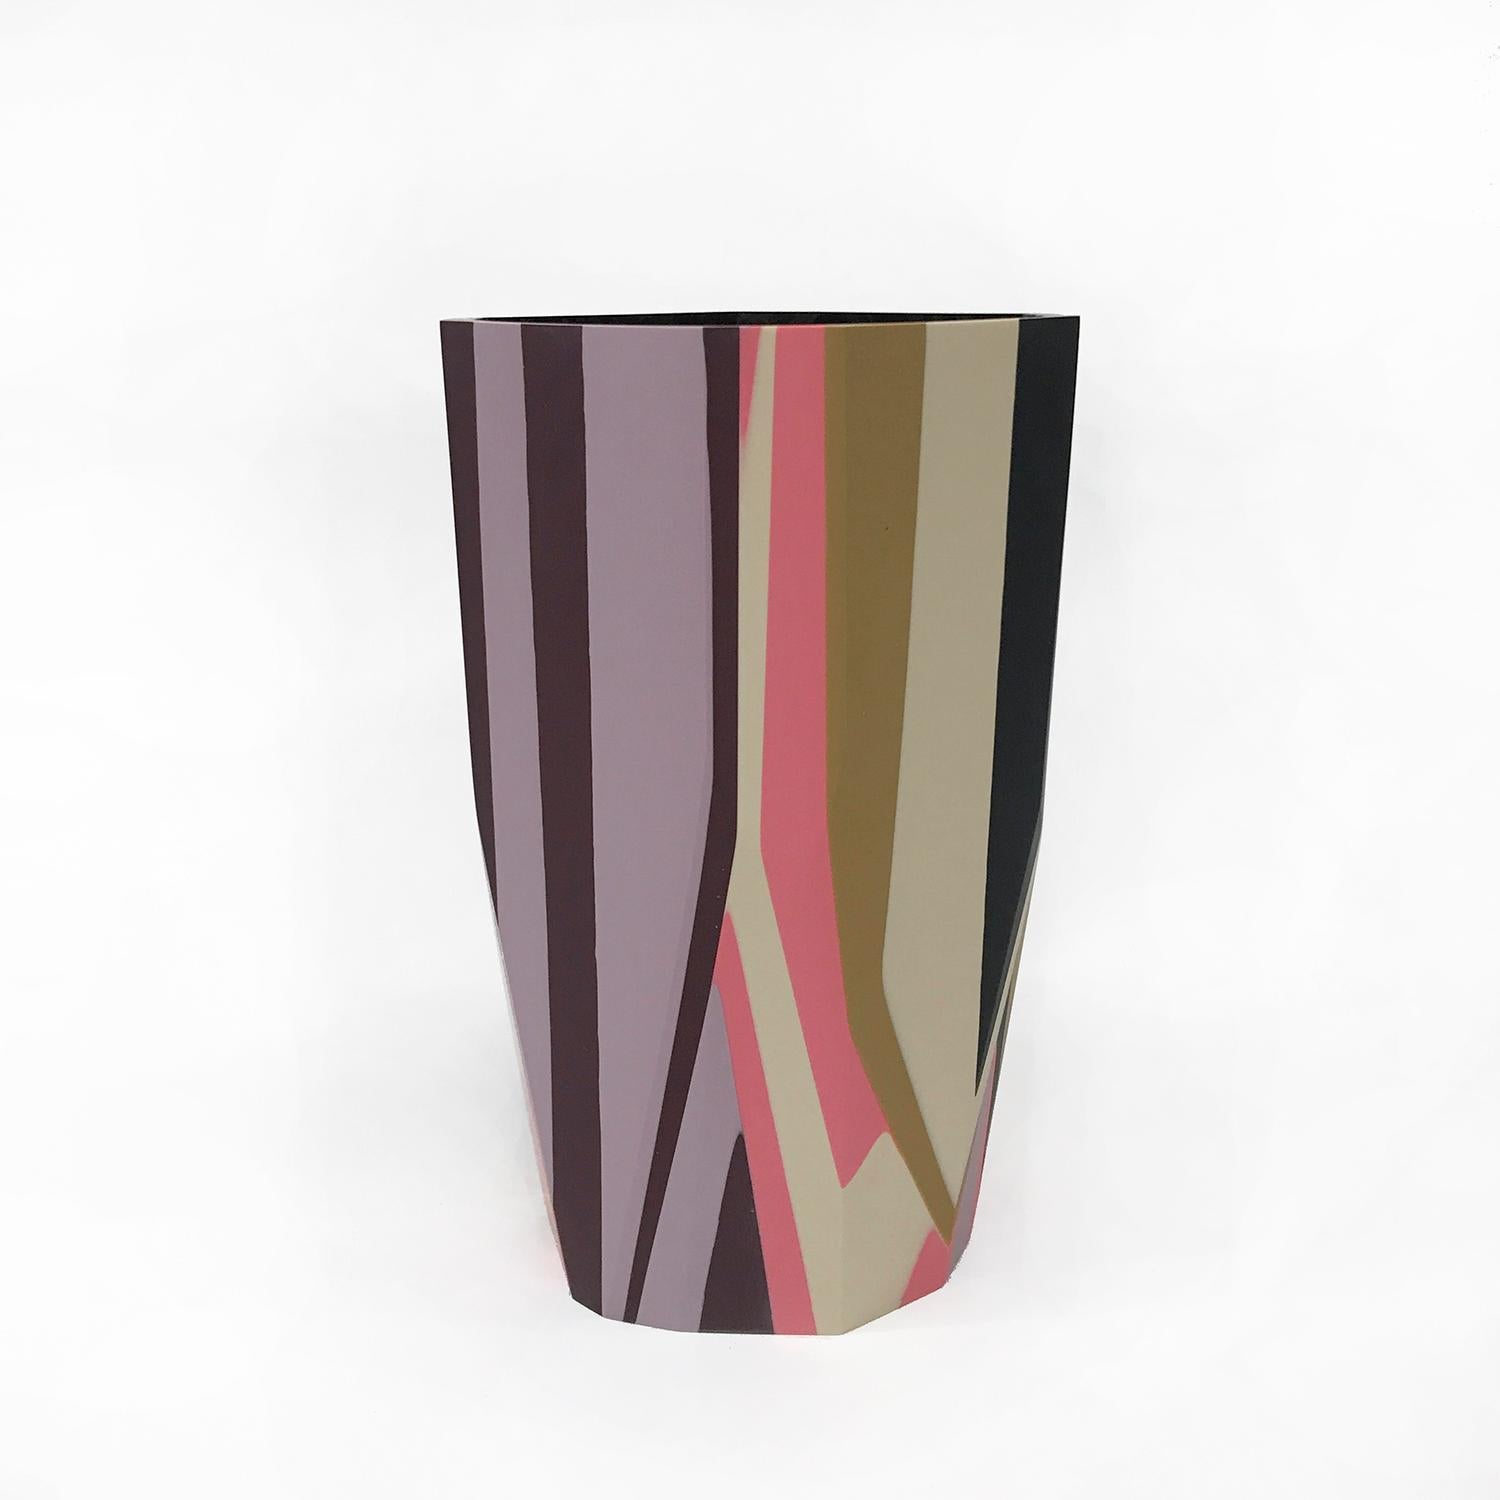 Die grafische und kühne Vase Puglia ist eine neue Ergänzung unserer Black Magic Collection von Harzgefäßen, die von dem Konzept inspiriert ist, das zu enthüllen, was vor den Augen des Betrachters verborgen wurde, aber dennoch allgegenwärtig